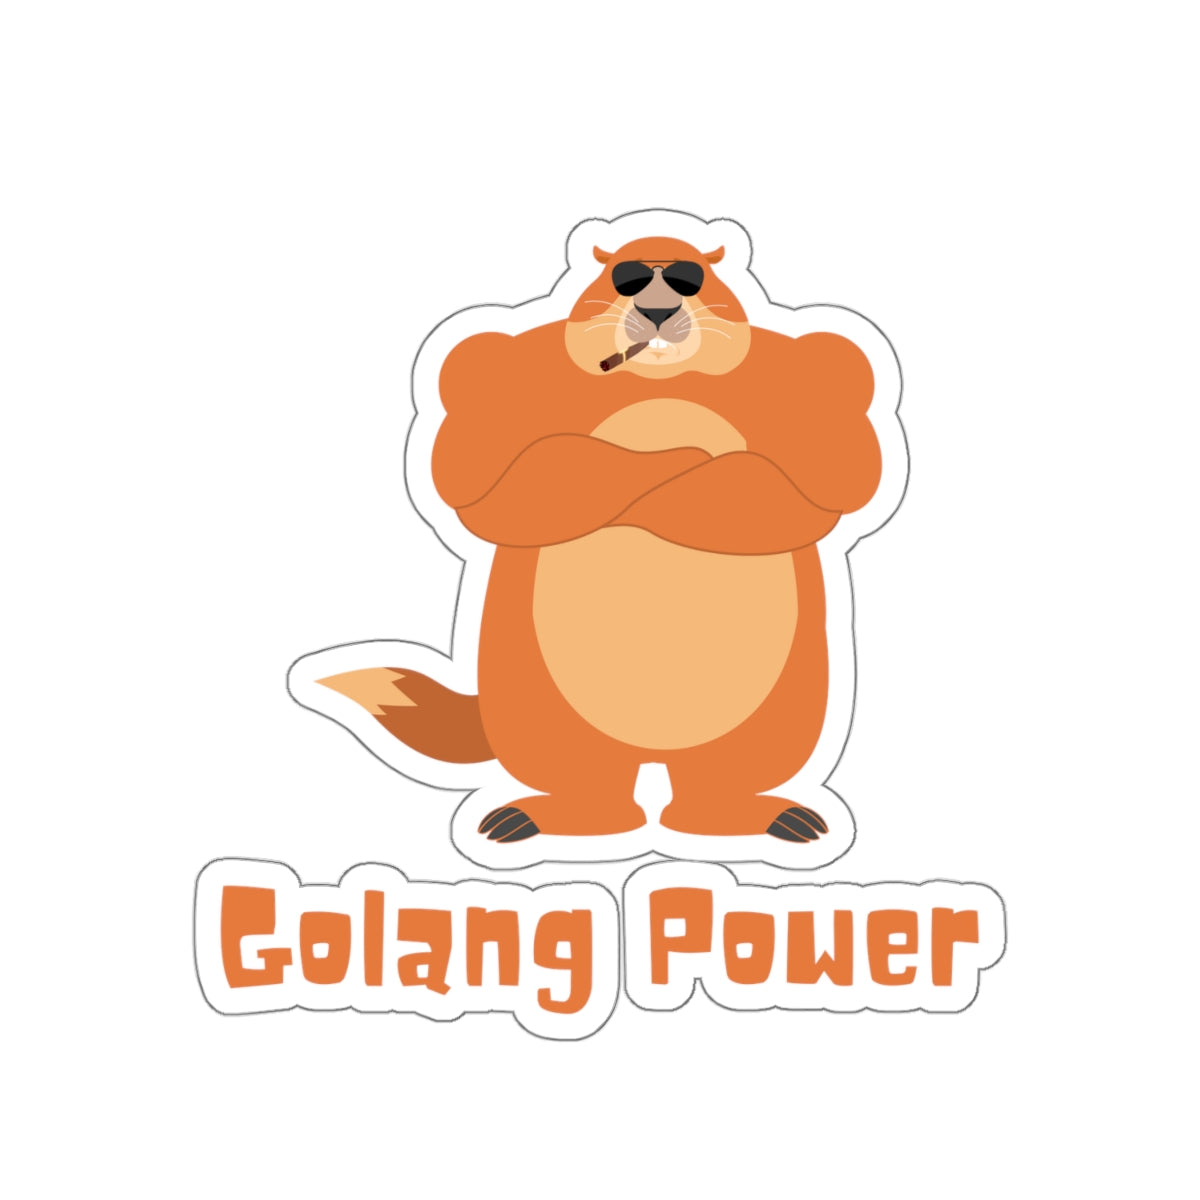 Golang Power - Developer / Programmer / Software Engineer Kiss Cut Sticker